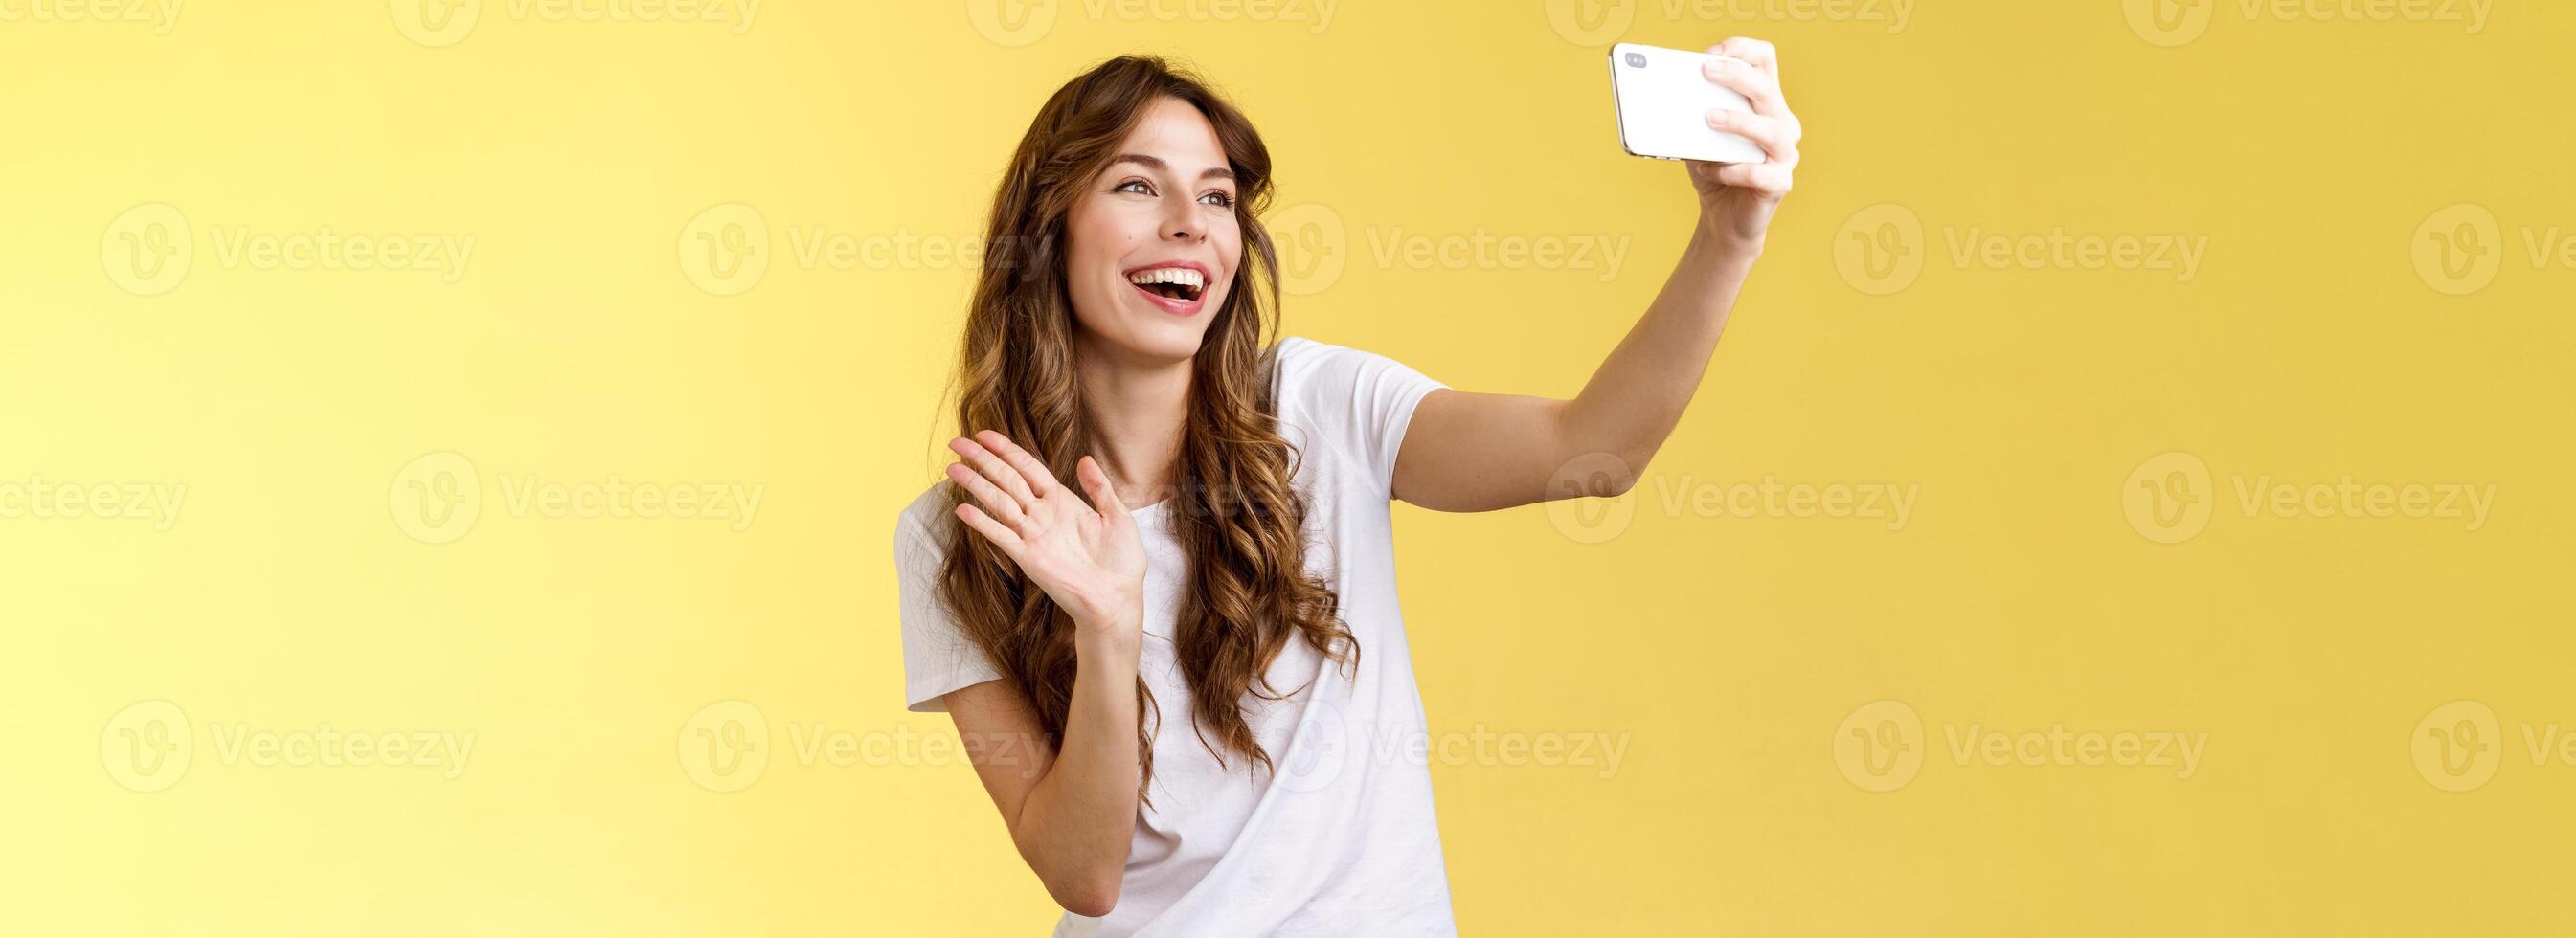 freundlich lebhaft gut aussehend heiter feminin Mädchen erweitern Arm halt Smartphone Aufzeichnung Video Blog winken Vorderseite Kamera lächelnd breit reden Fans Videoanruf nehmen Selfie Gelb Hintergrund foto